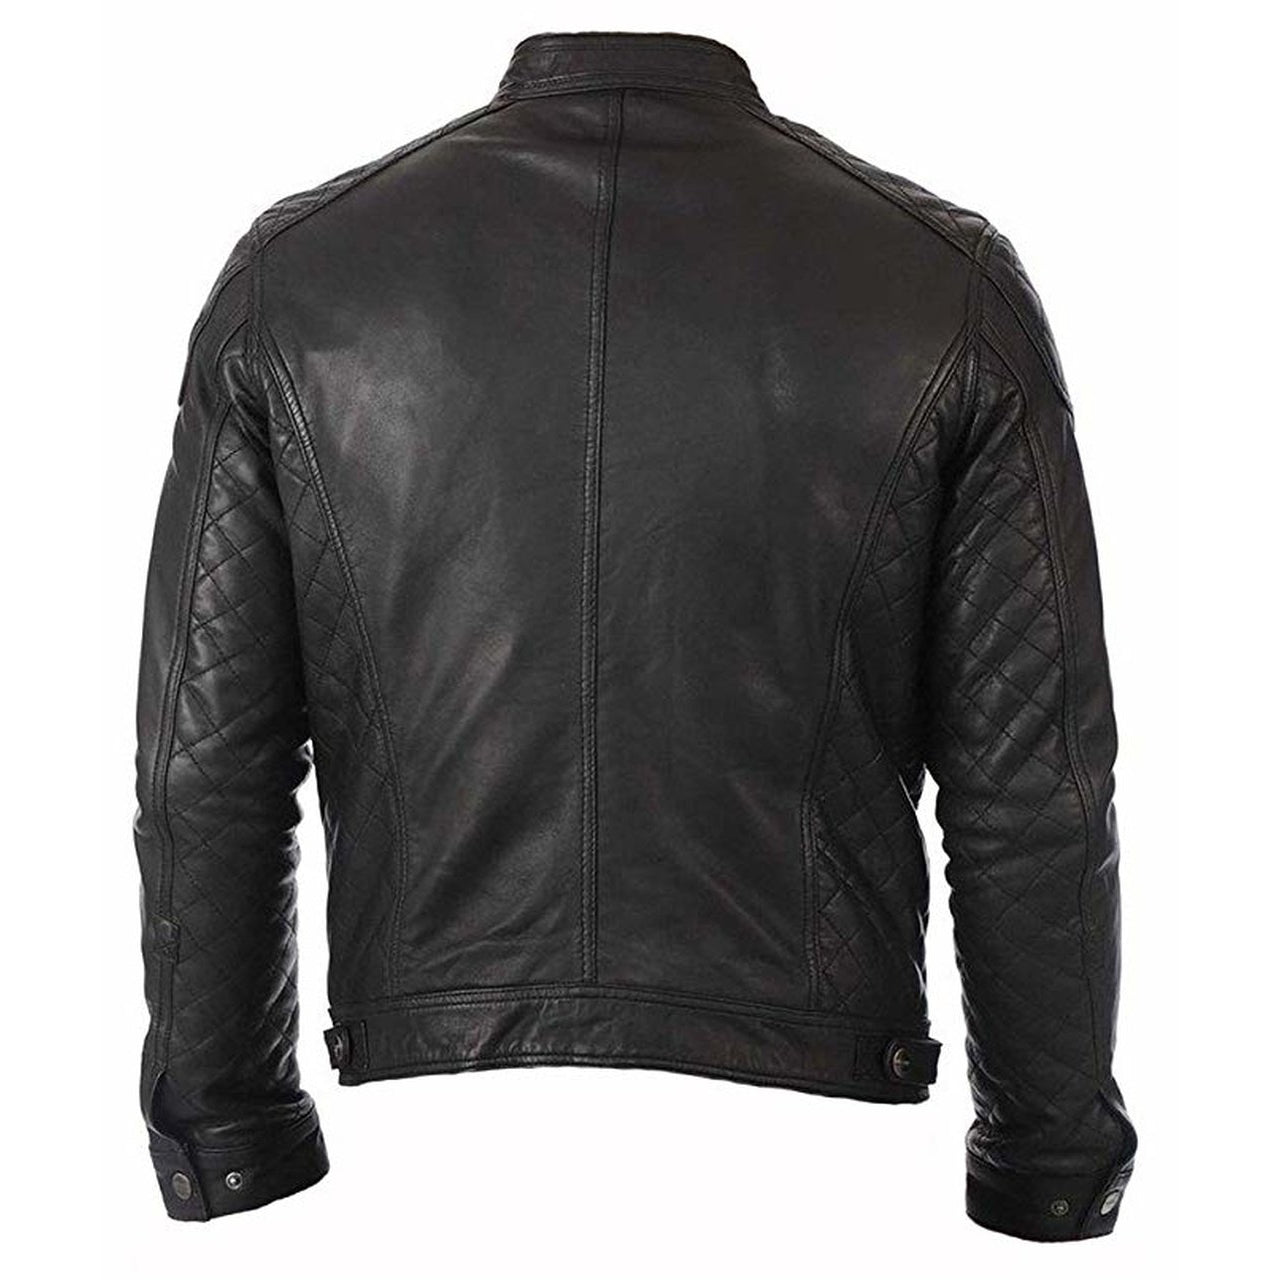 Stylish Fit Black Leather Jacket for Men - Men Jacket - Leather Jacket